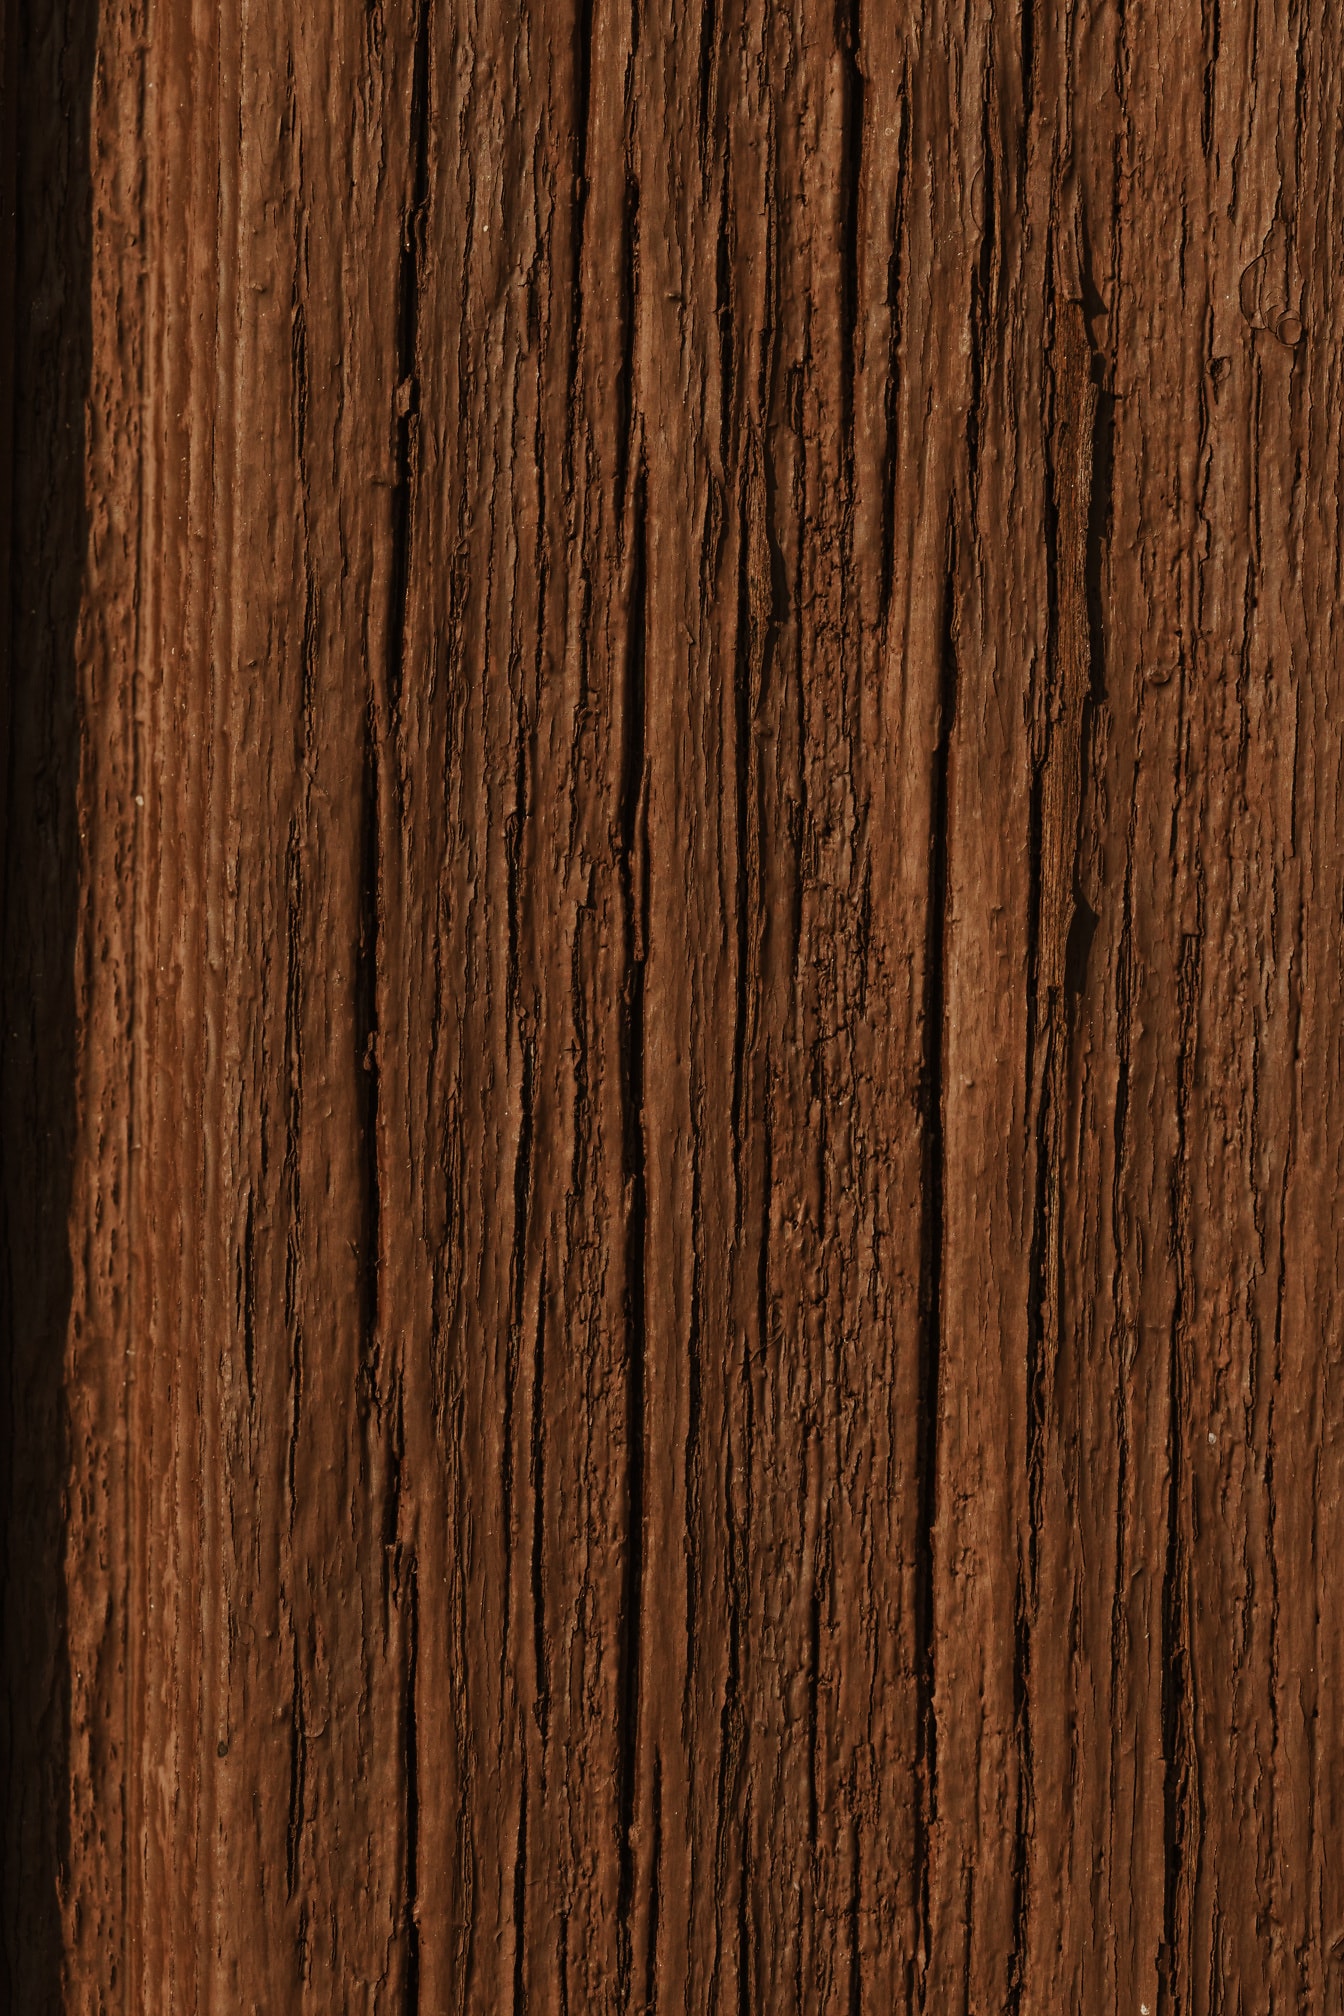 Detail hnědé hrubé barvy na dřevěném prkně